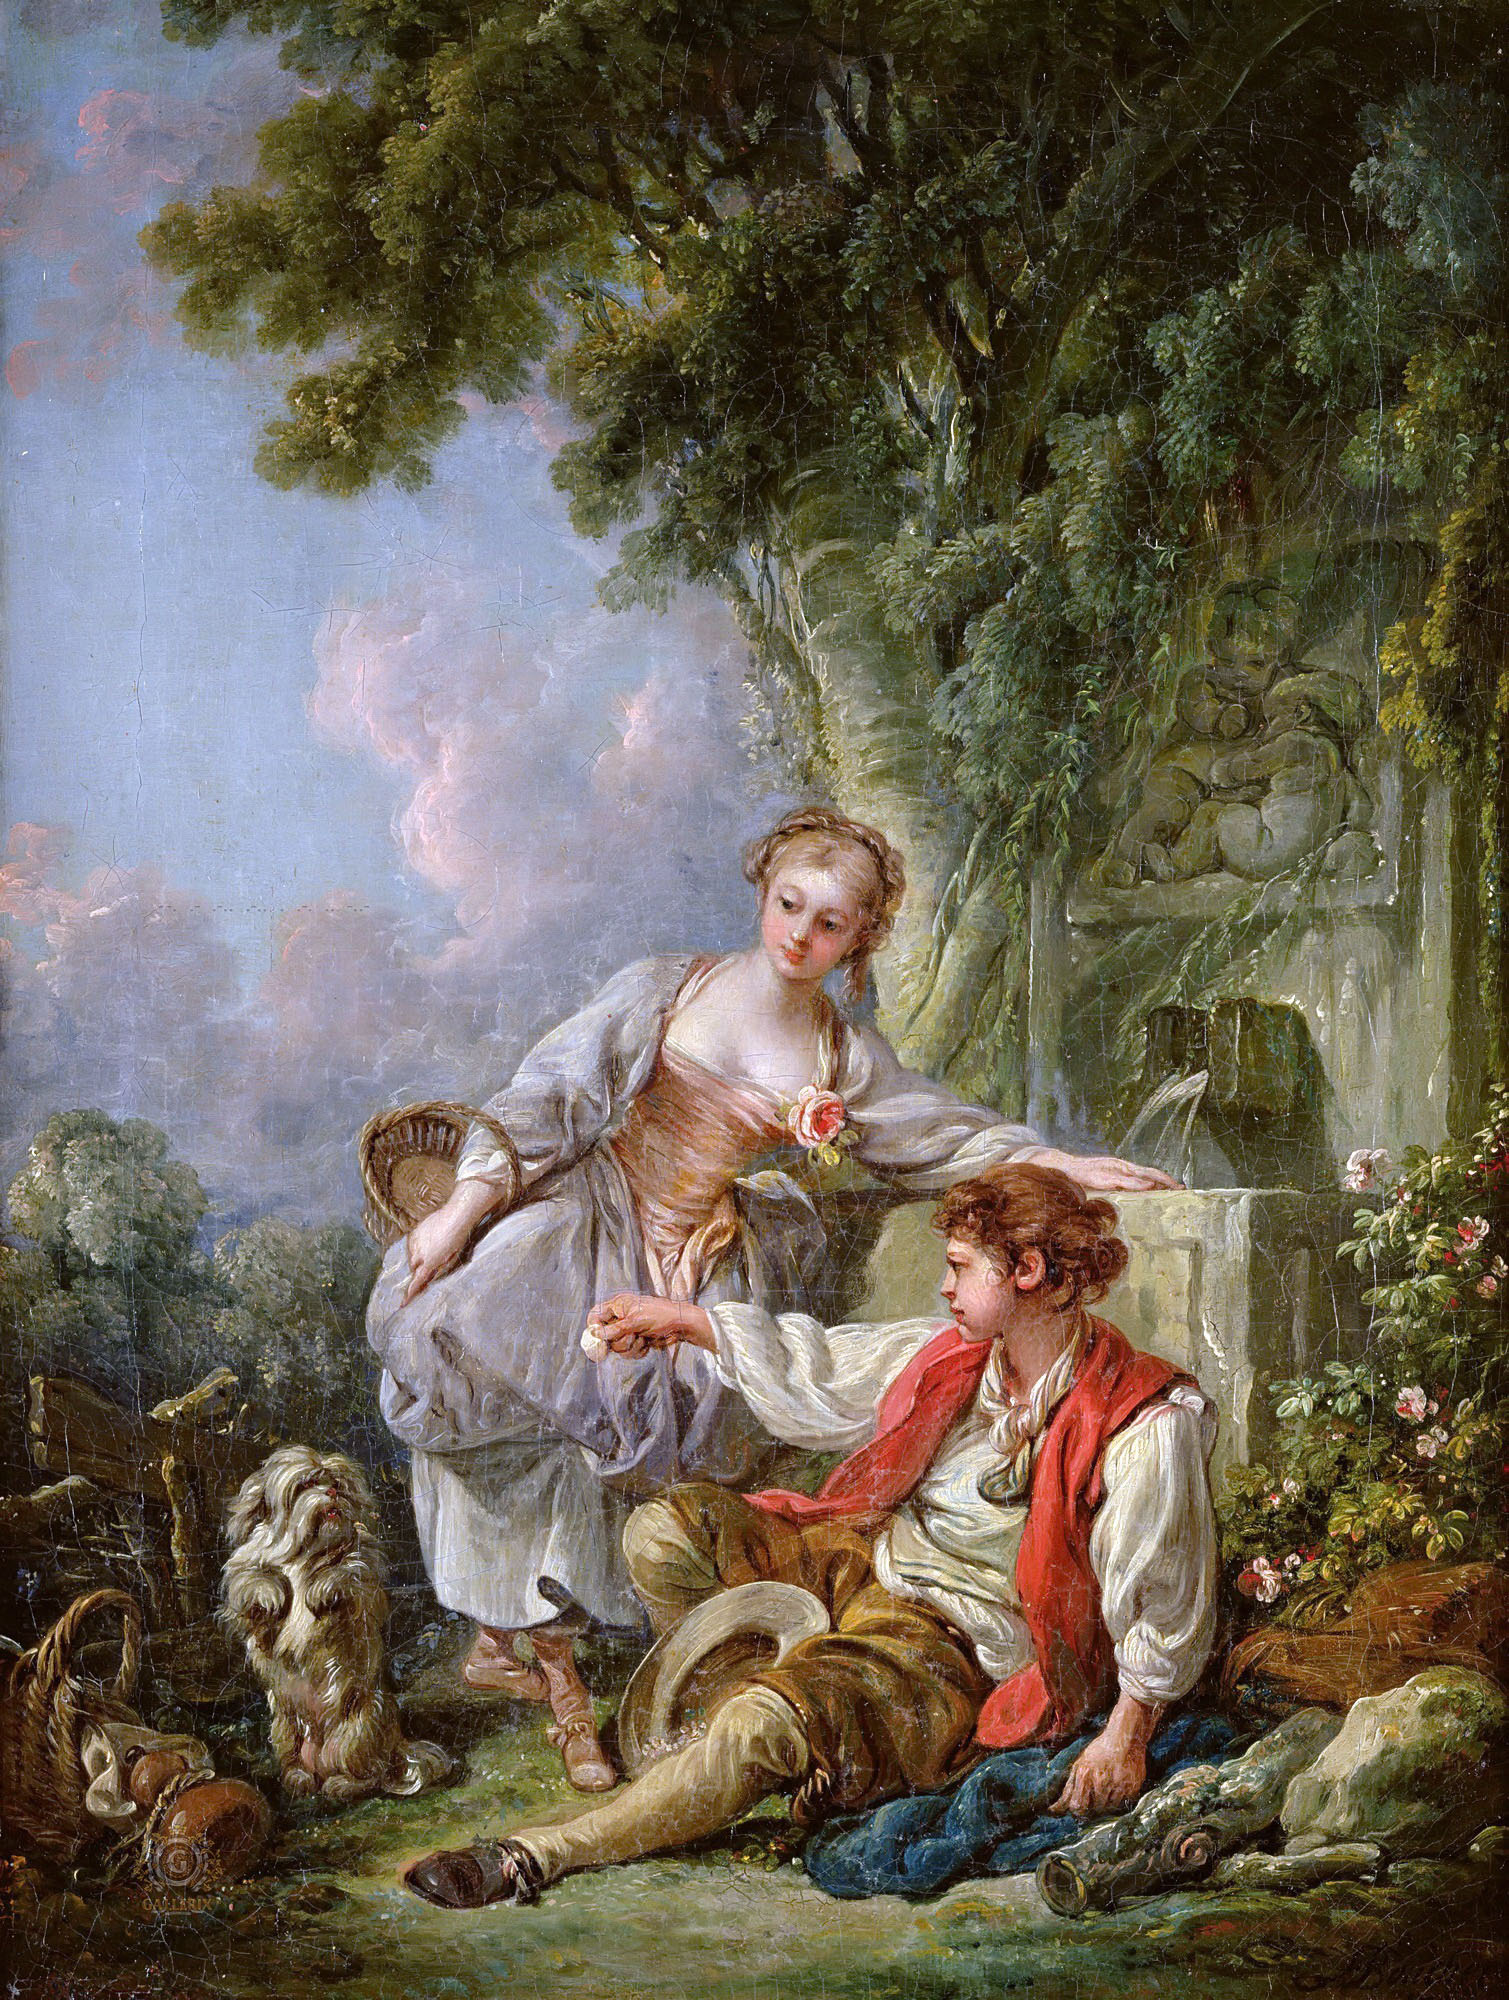 Франсуа Буше. "Дрессировка собачки". 1768. Музей искусств, Ним.